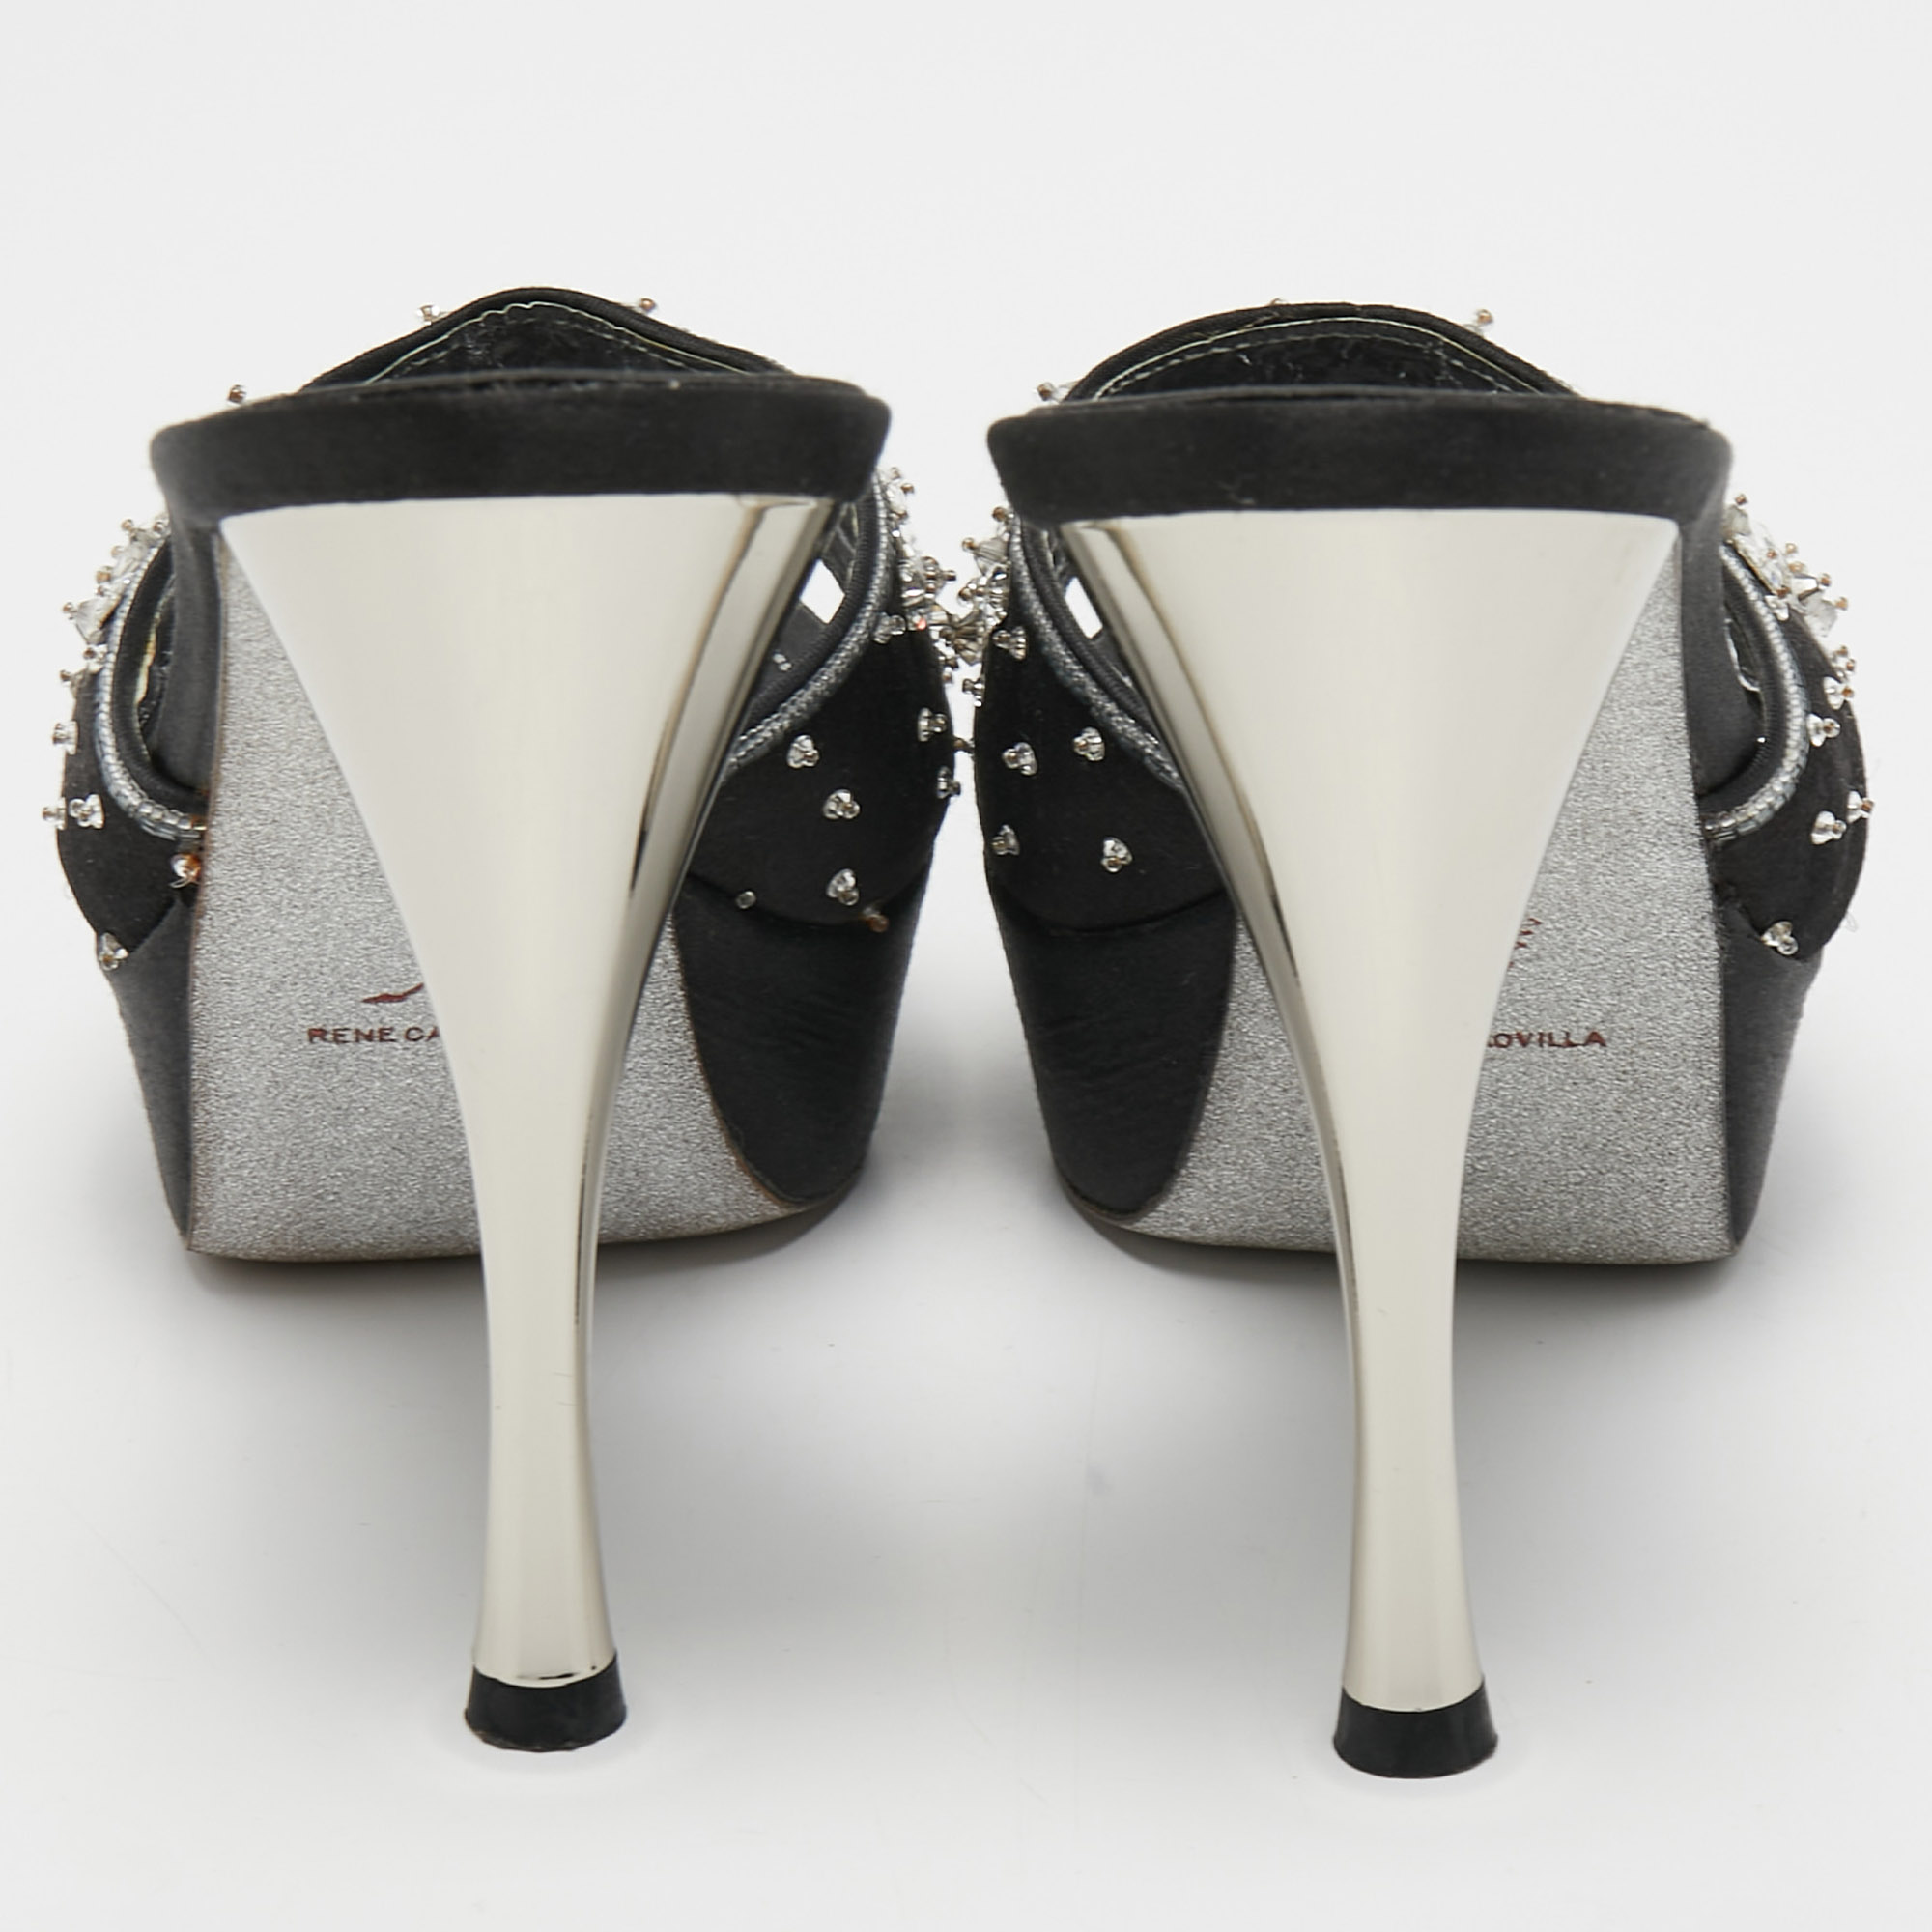 René Caovilla Black Satin Embellished Slide Sandals Size 37.5